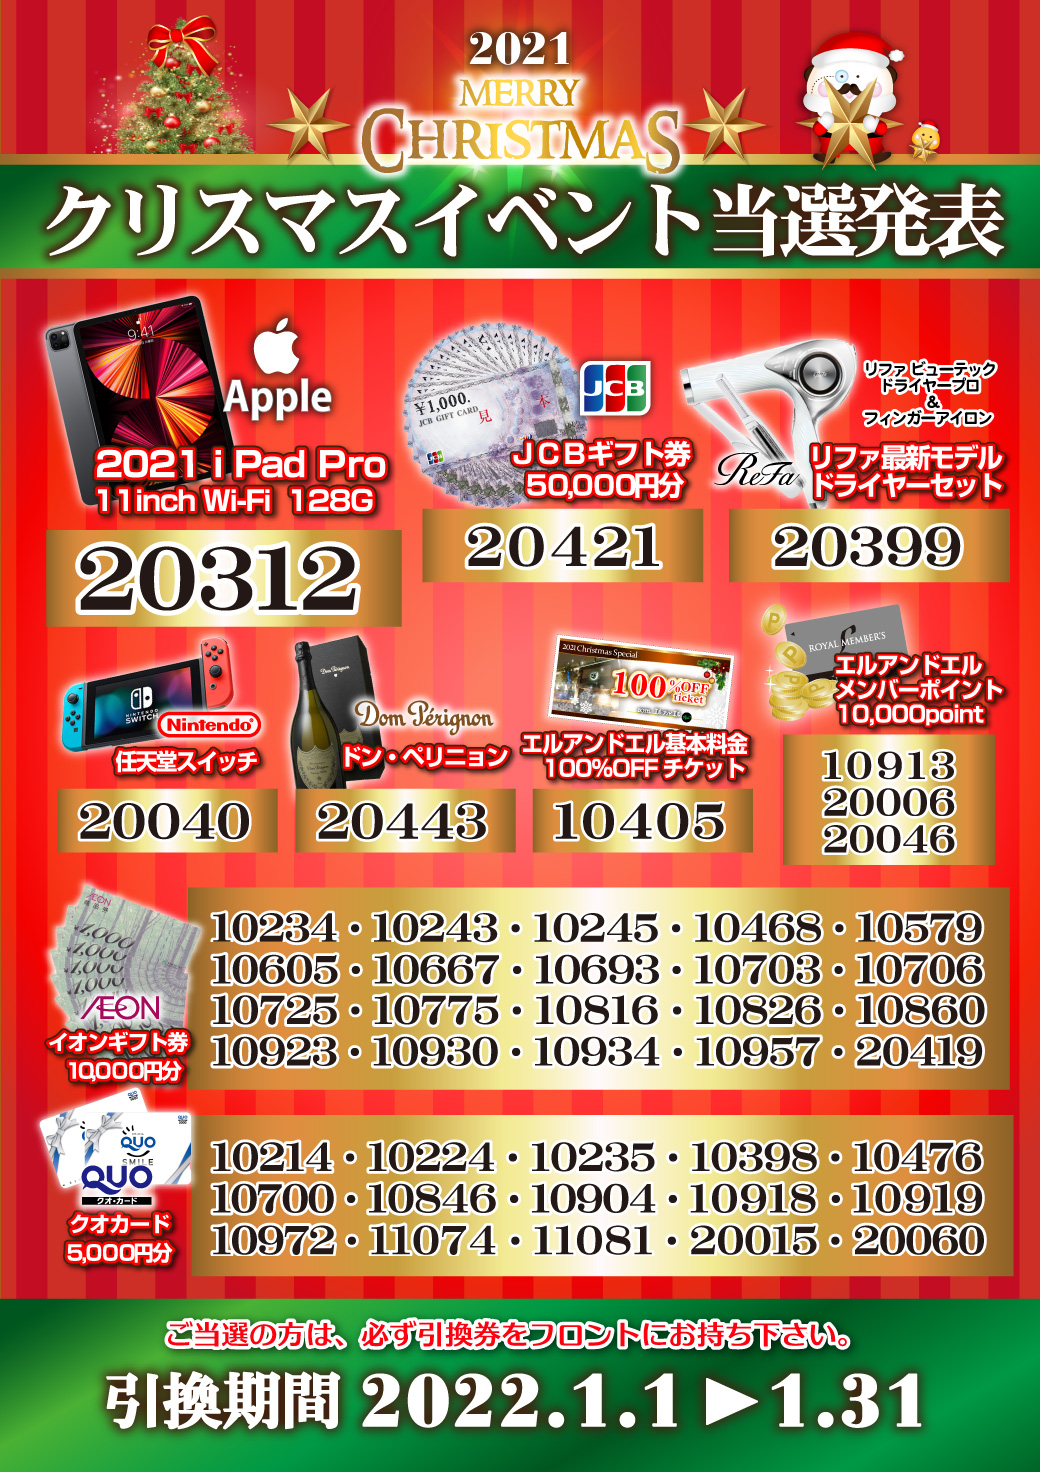 20220101【大宮】クリスマスイベント当選発表